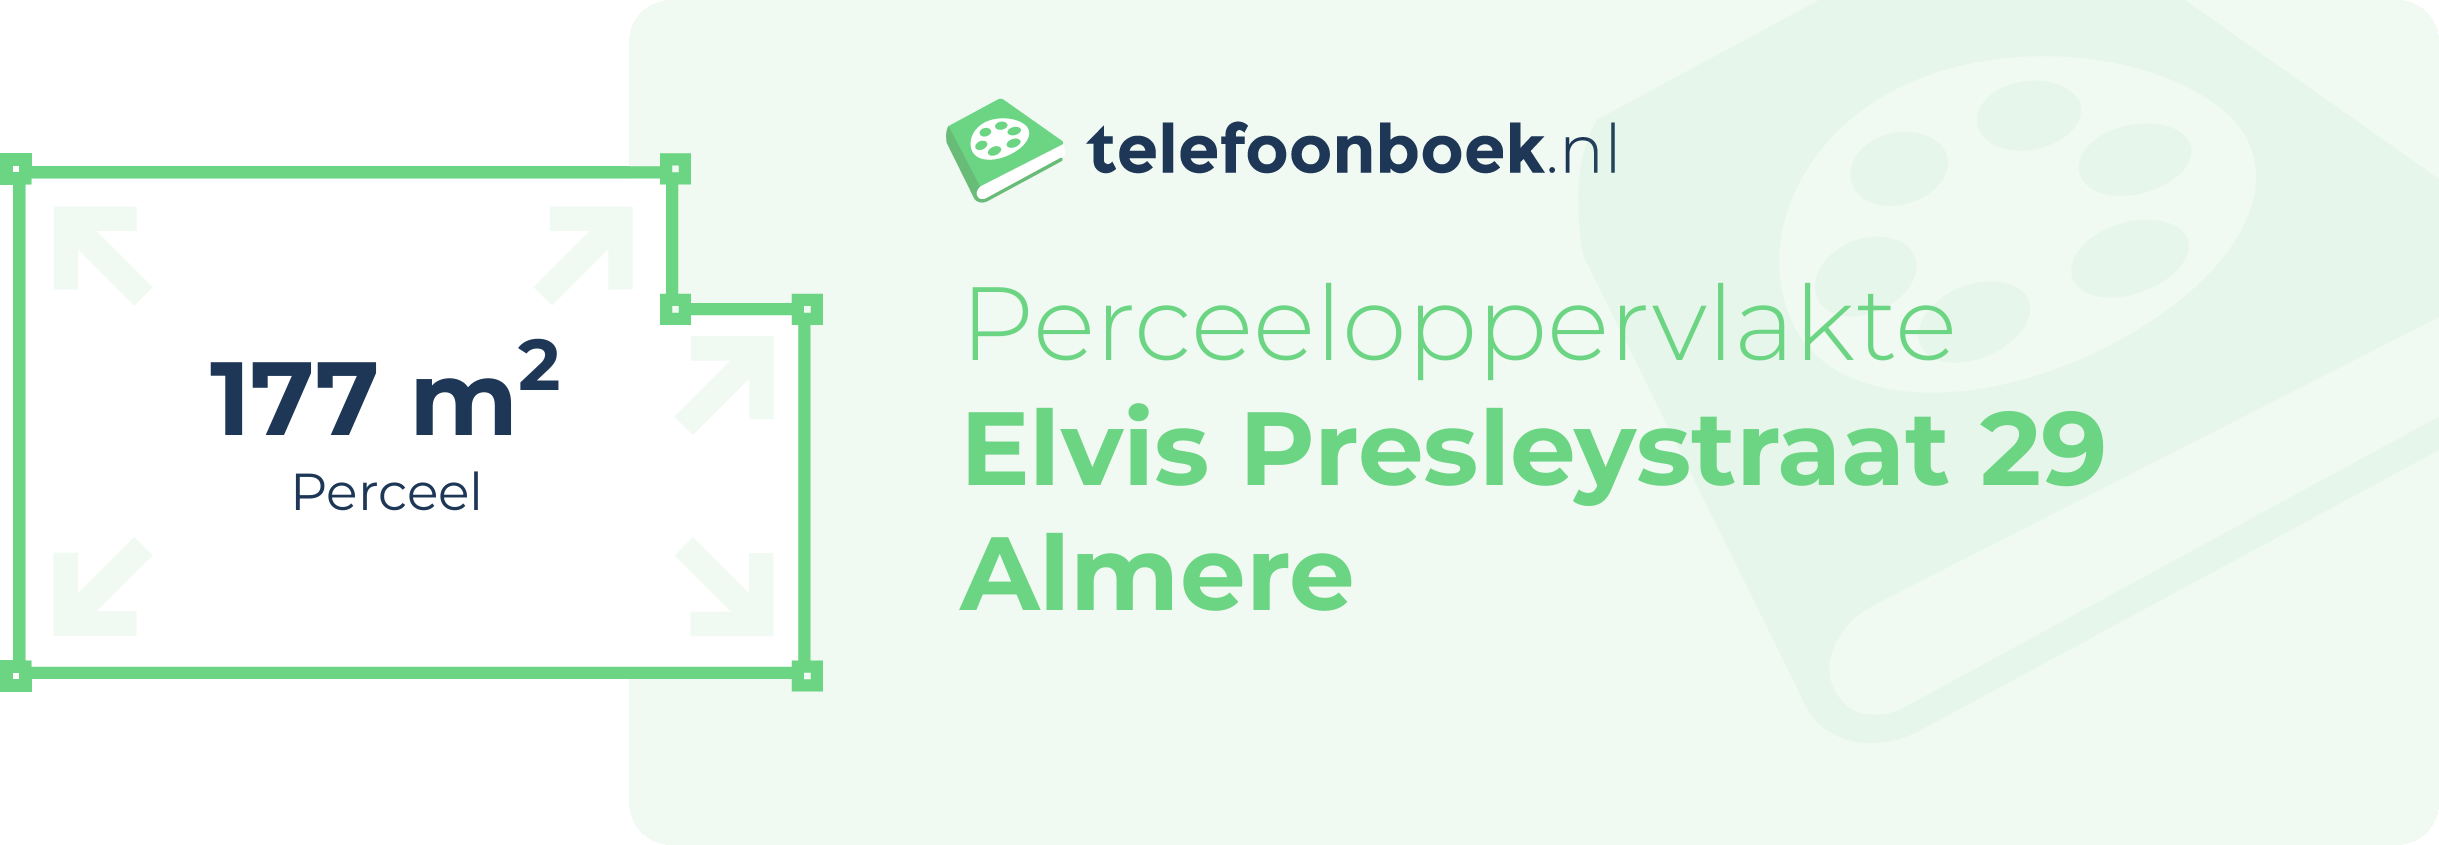 Perceeloppervlakte Elvis Presleystraat 29 Almere